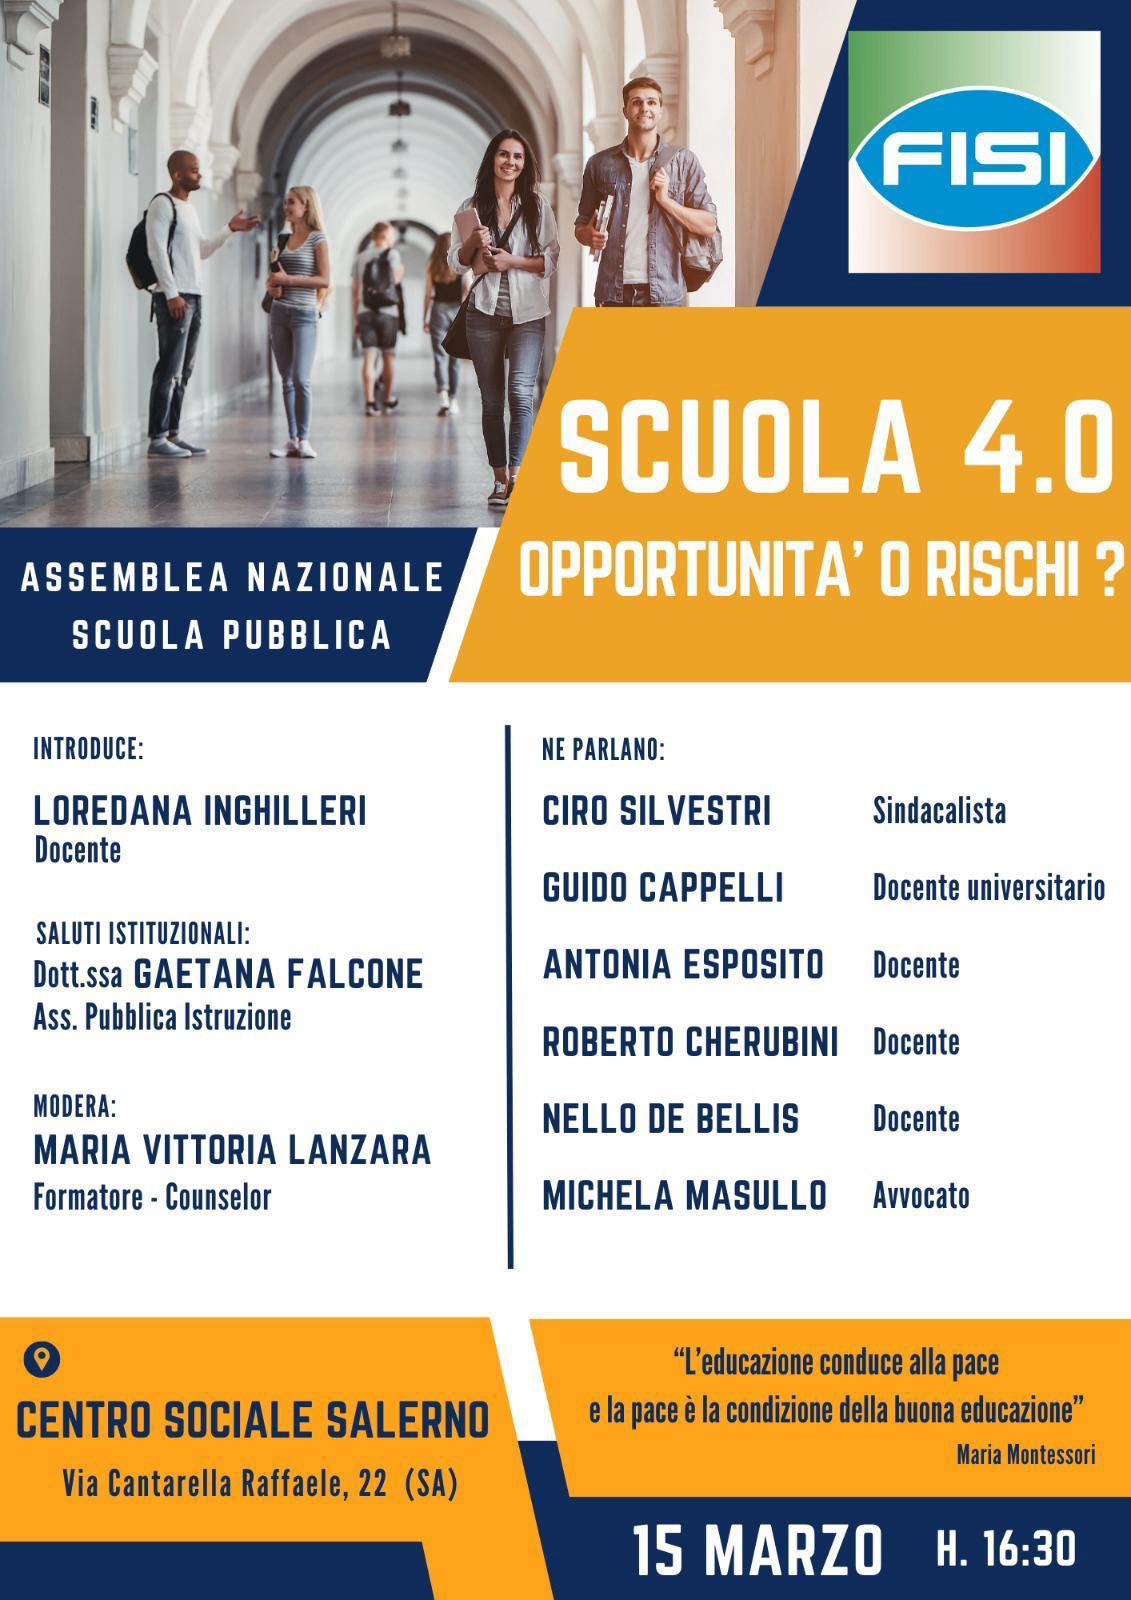 Salerno: a Centro Sociale incontro “Scuola 4.0 opportunità o rischi?”